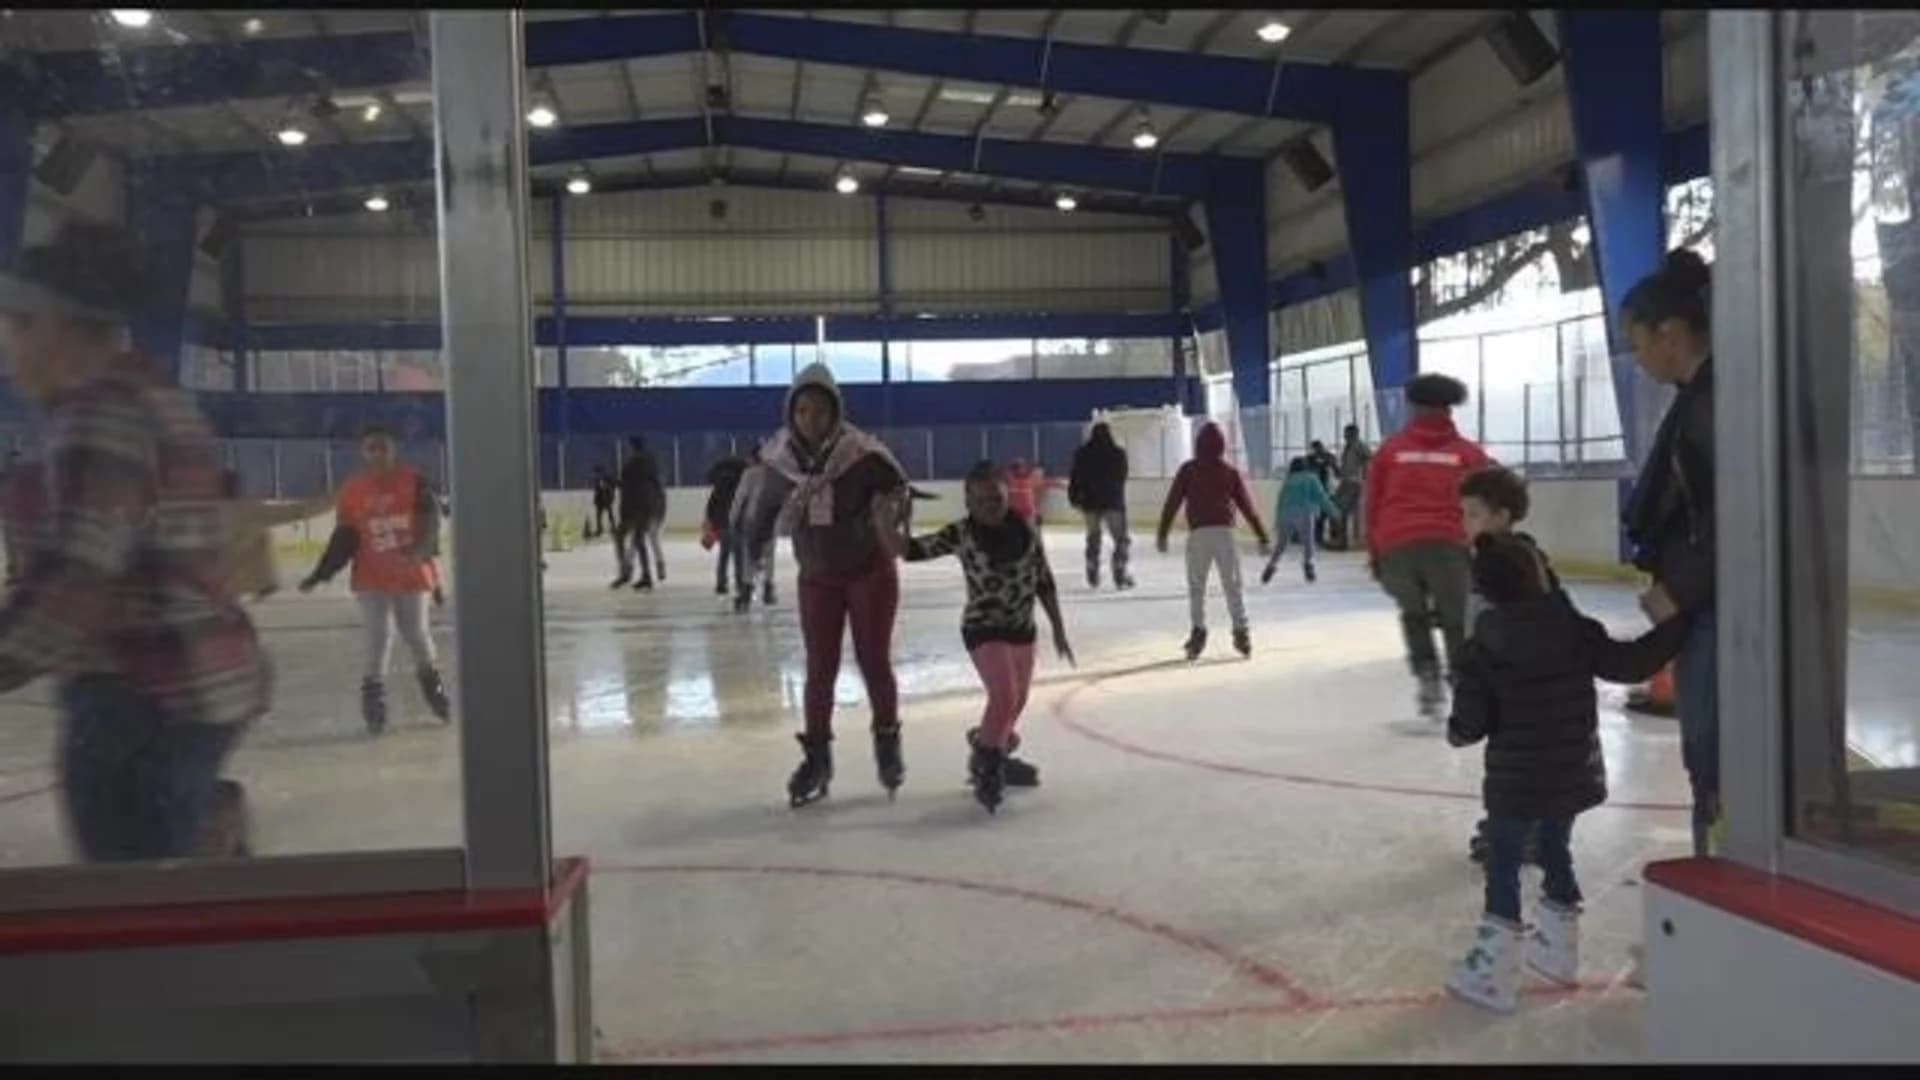 Bronx residents skate into colder season at Kips Bay rink